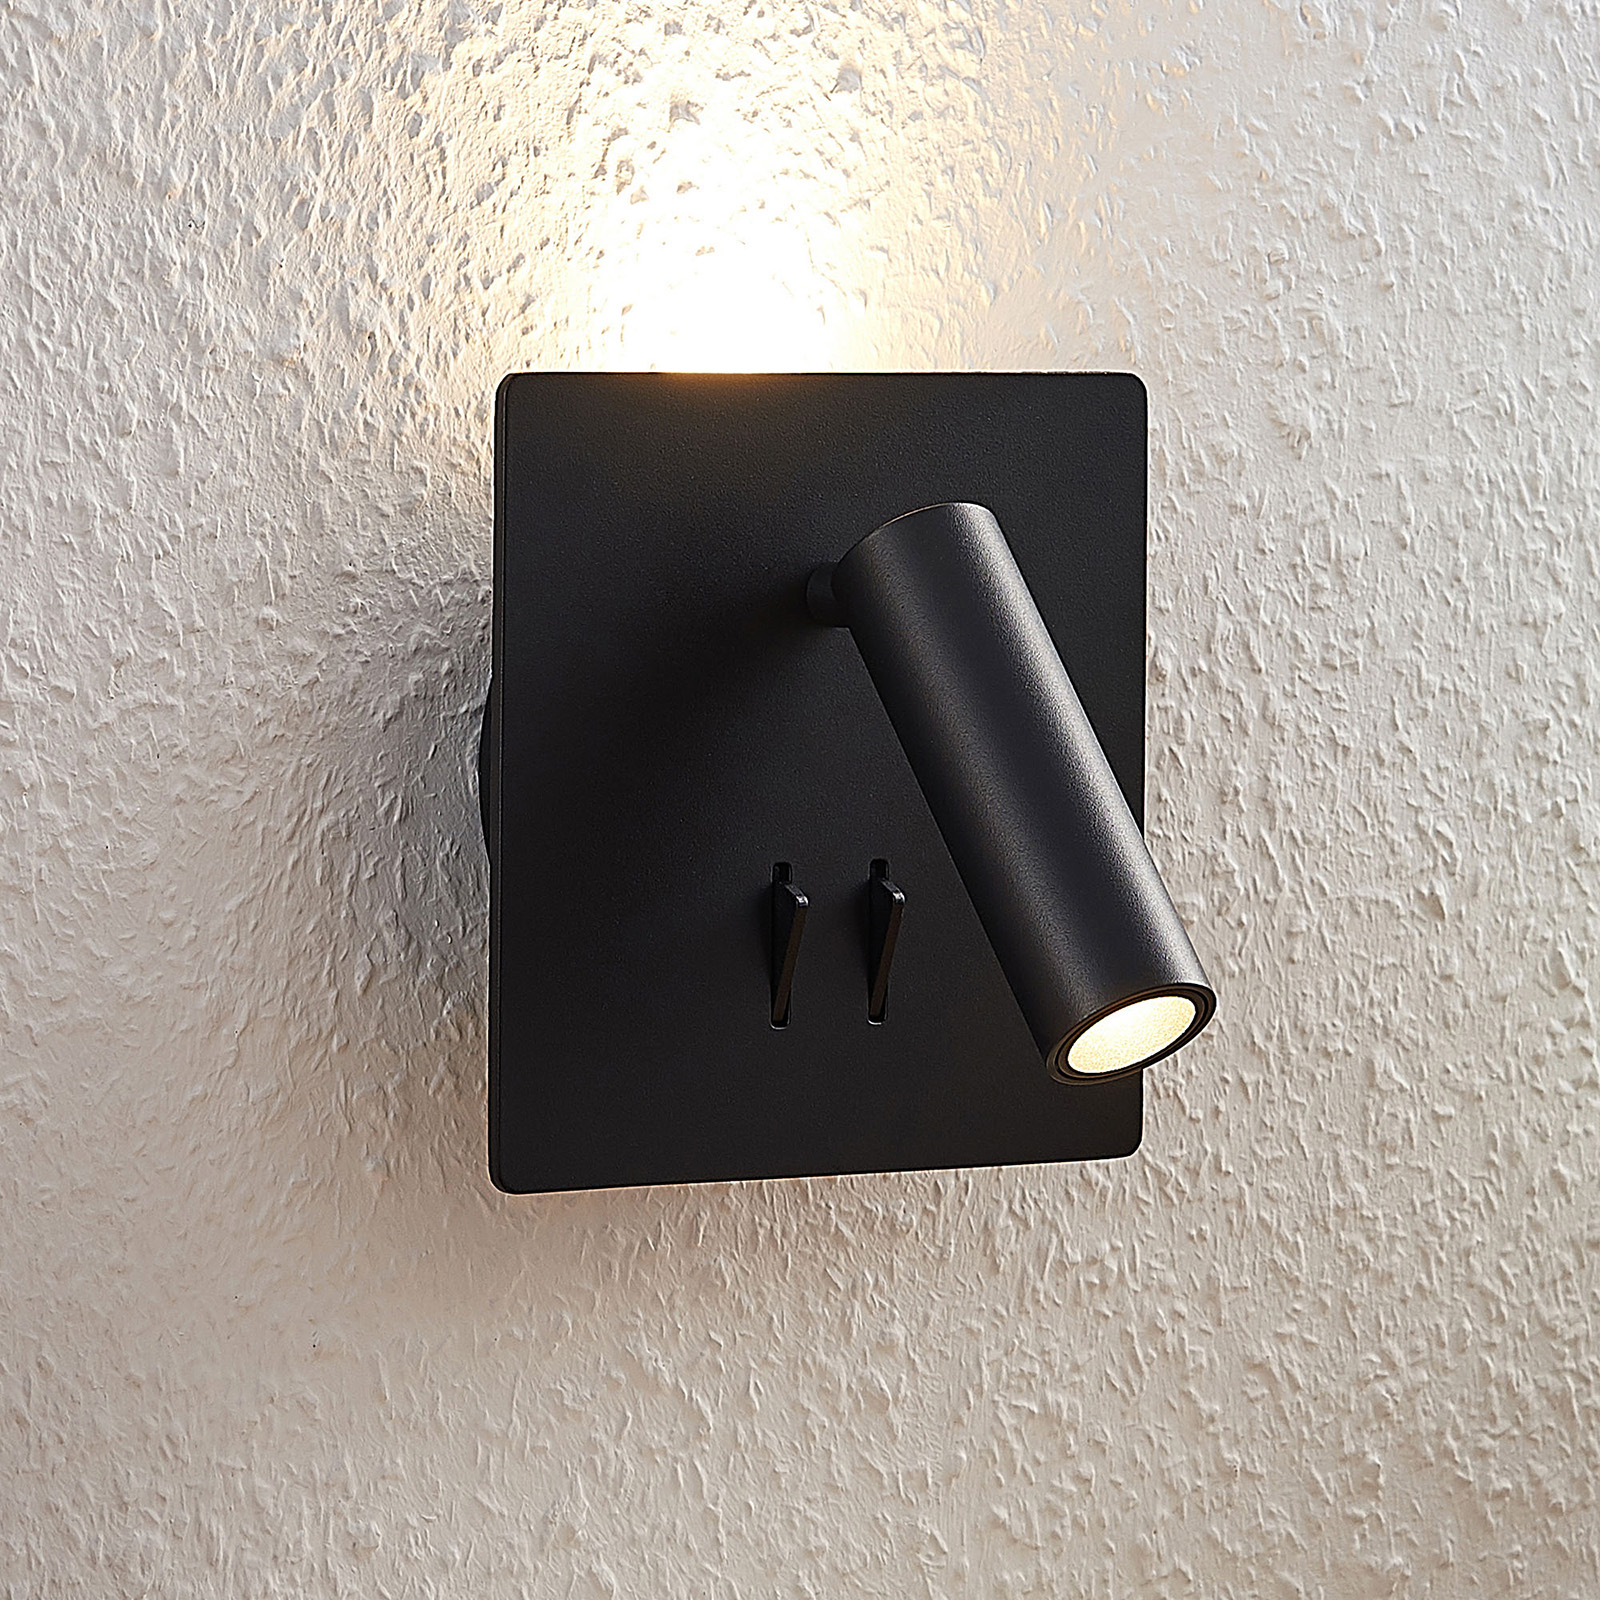 Lucande Magya LED-vägglampa svart 2 lampor kvadrat